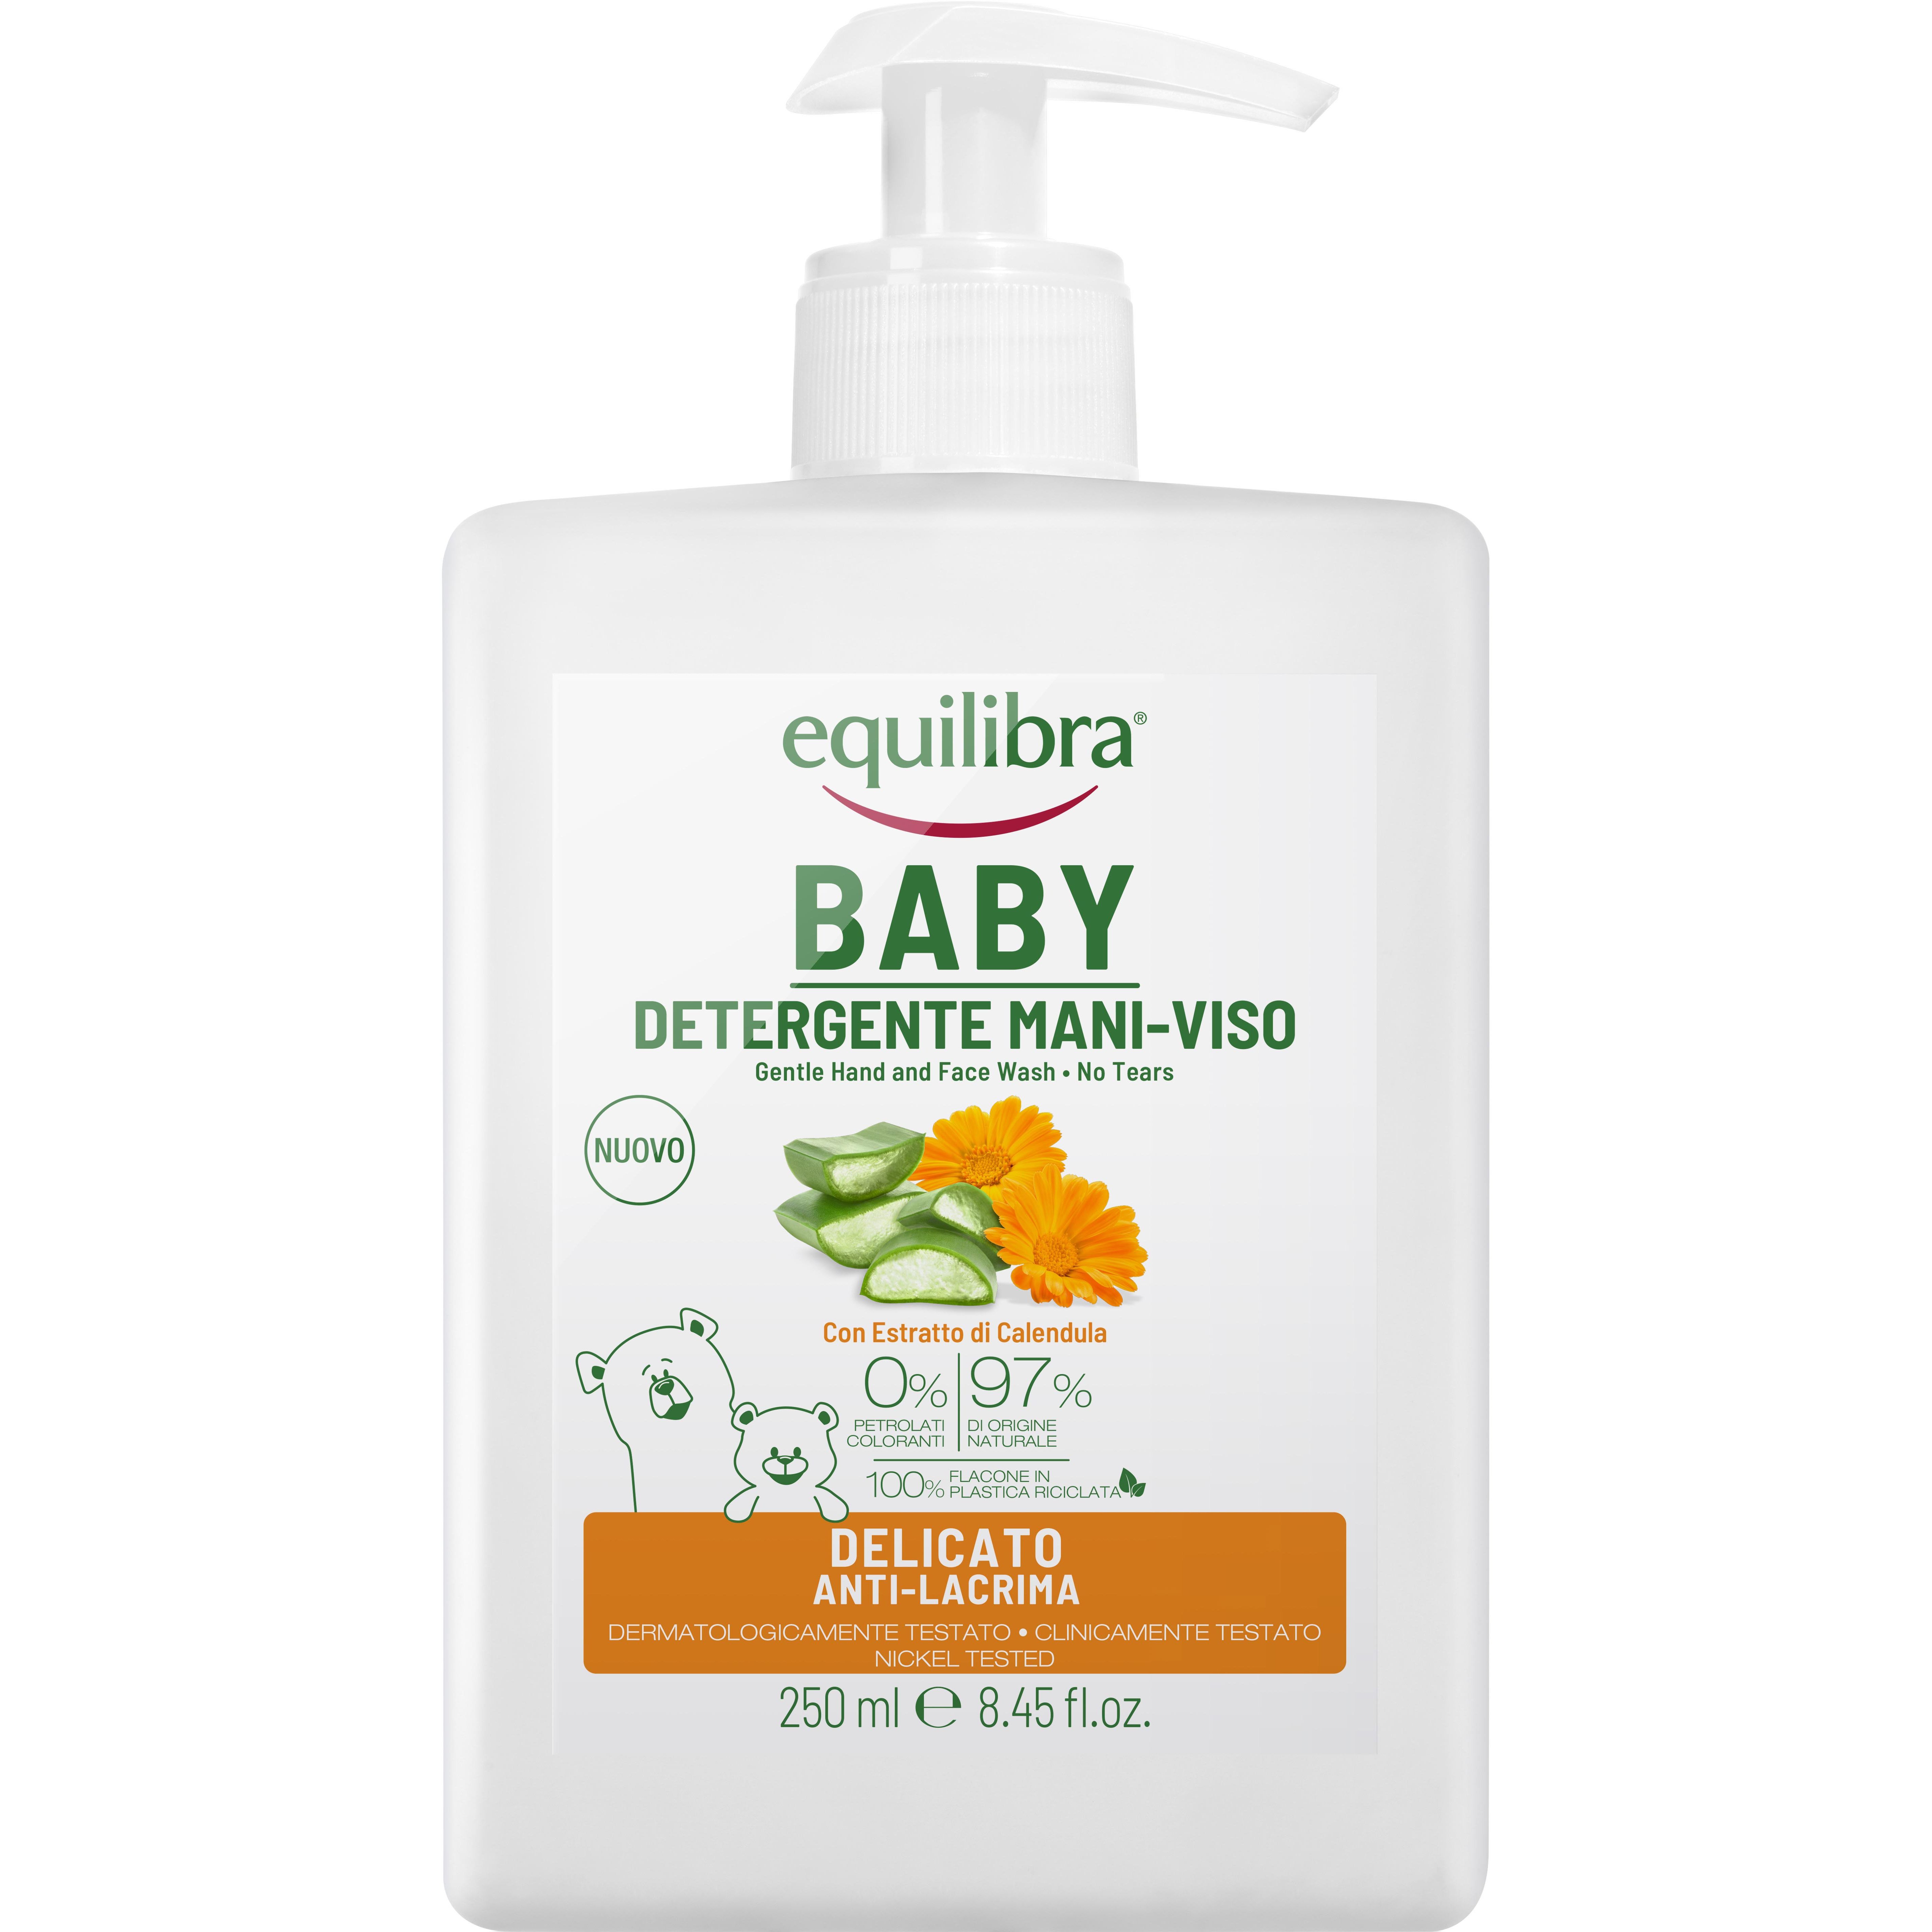 Нежное детское мыло для лица и рук Equilibra Baby Gentle Cleanser 250 мл - фото 1